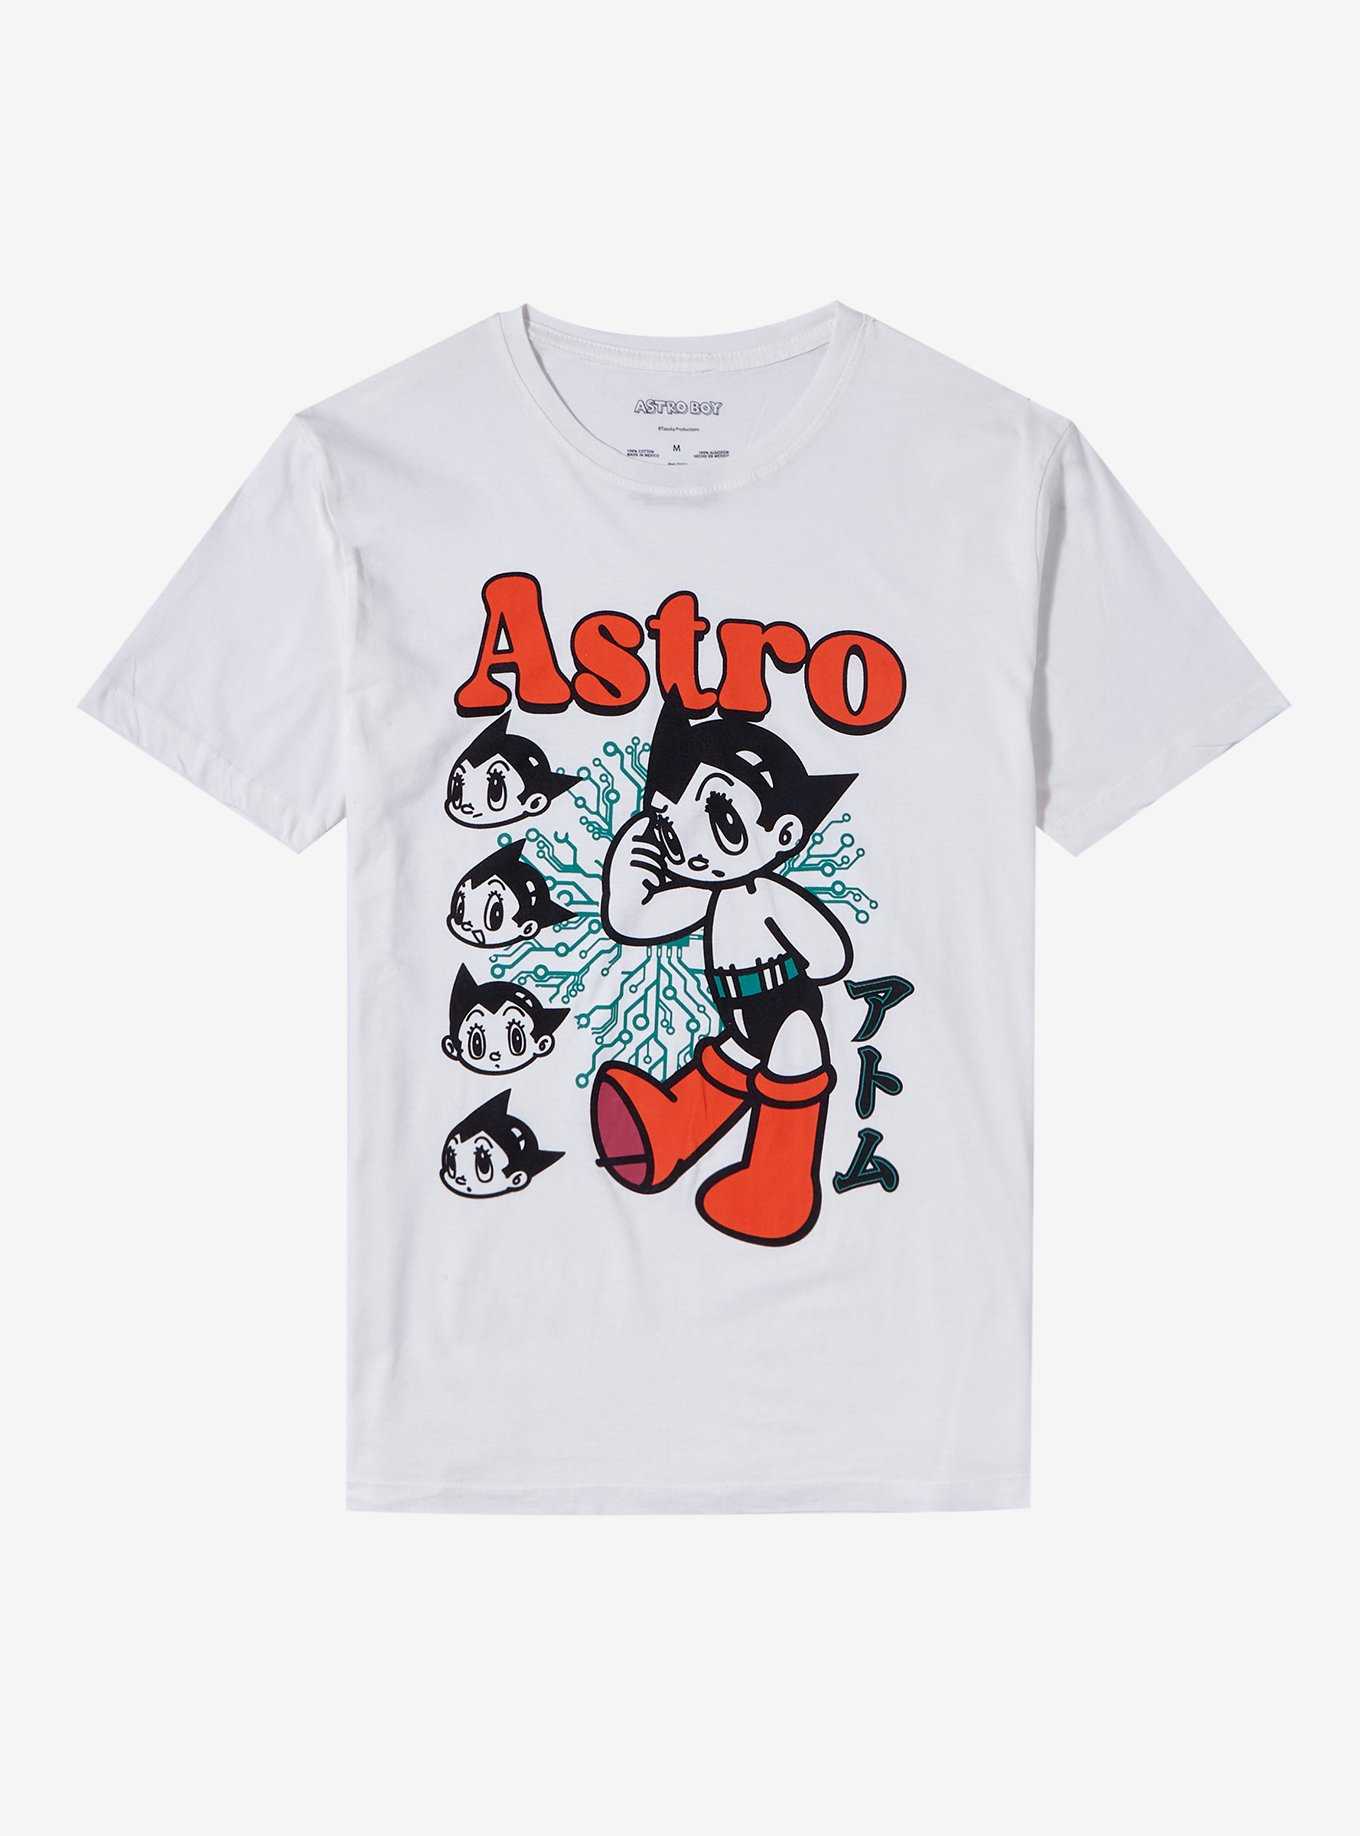 Astro Boy Heads Boyfriend Fit Girls T-Shirt, , hi-res